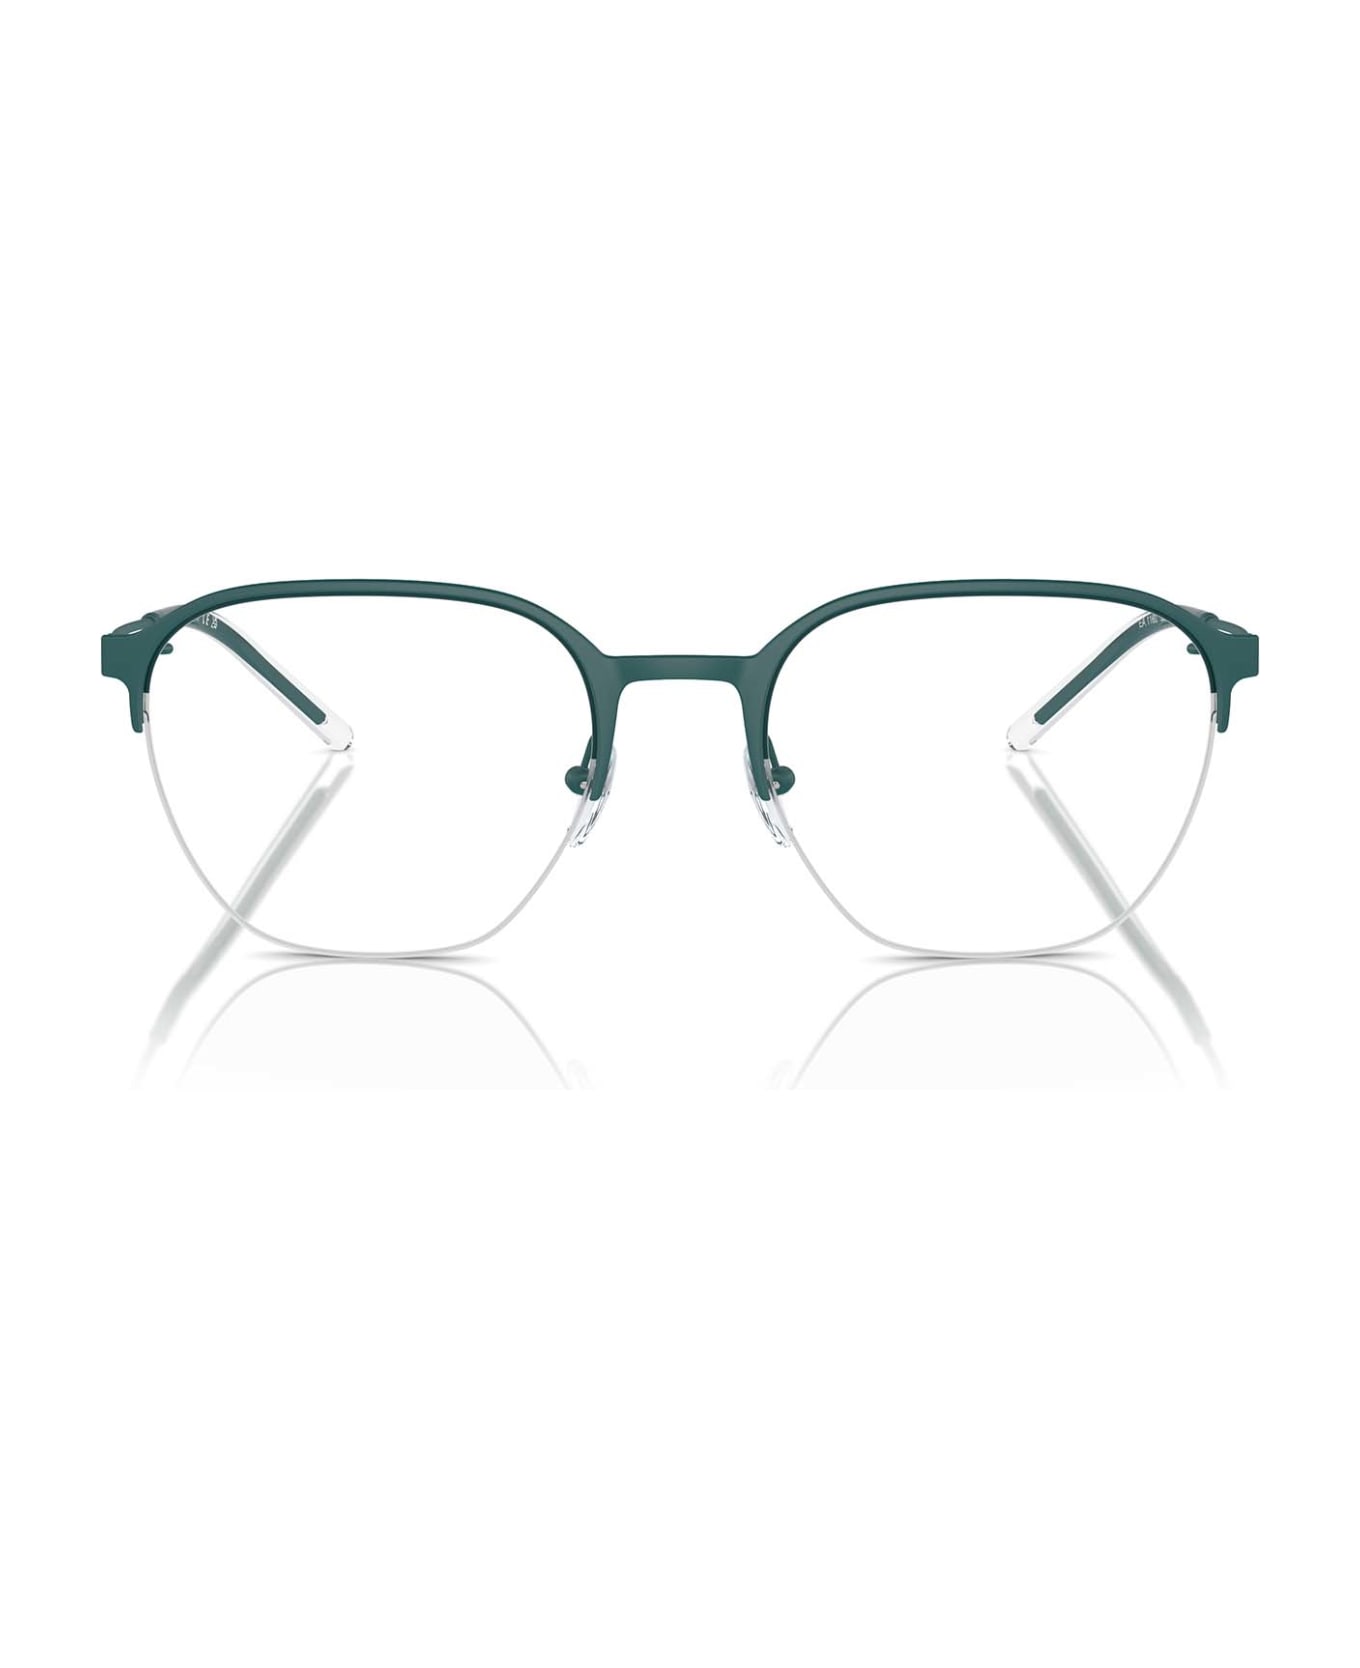 Emporio Armani Ea1160 Matte Alpine Green Glasses - Matte Alpine Green